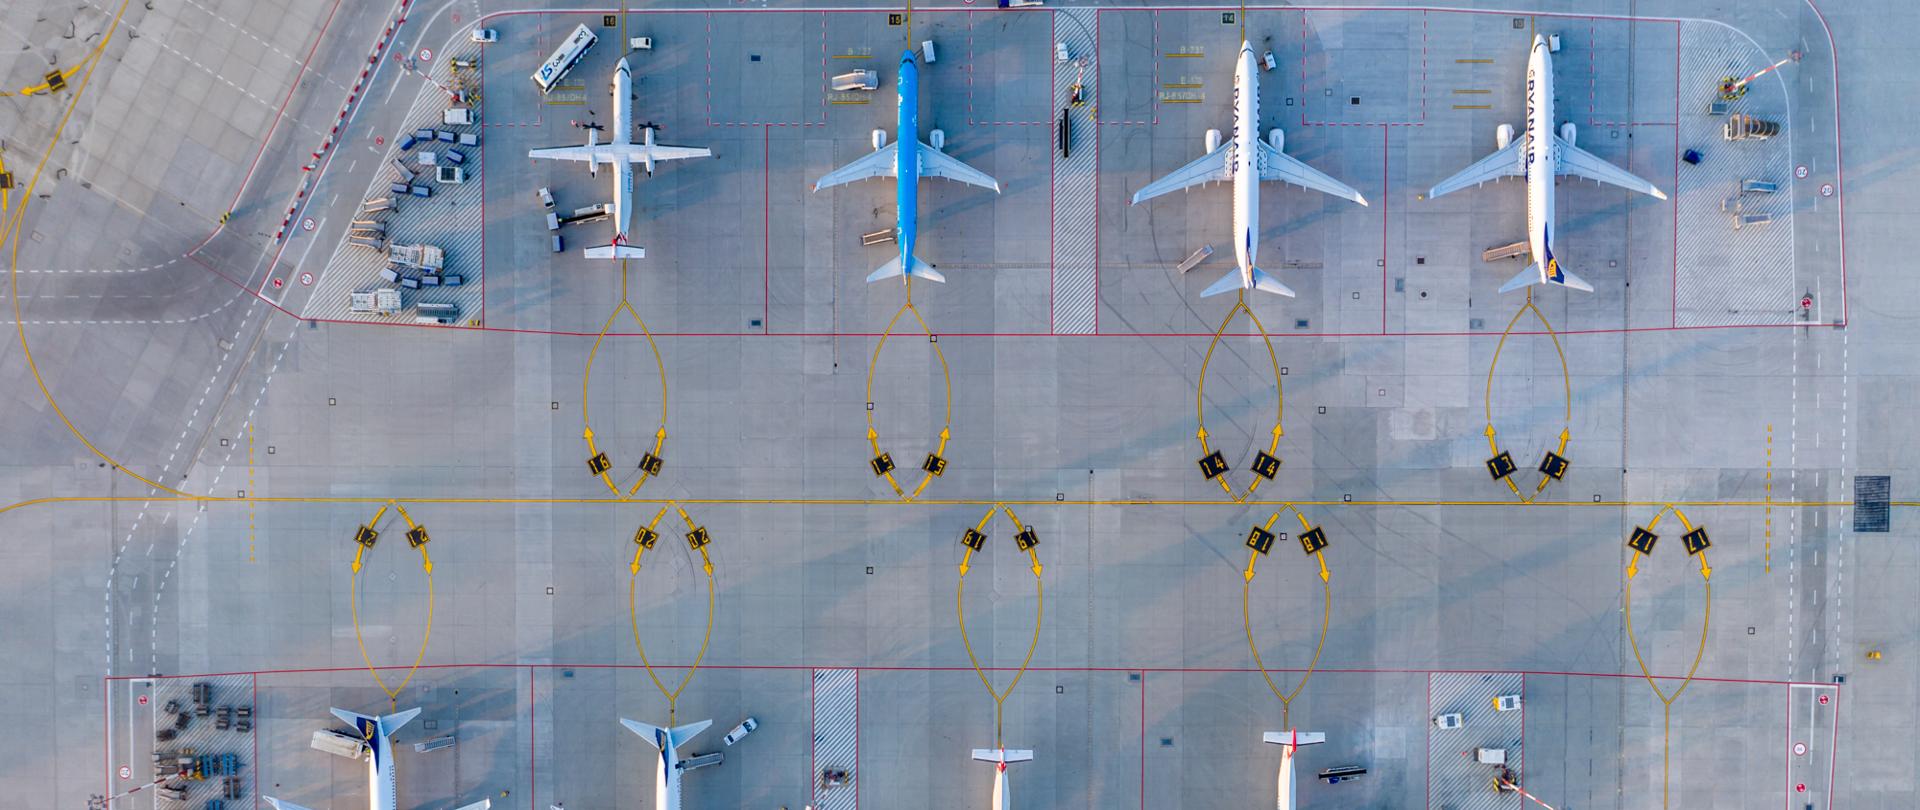 Na zdjęciu widać płytę lotniska z lotu ptaka, na płycie stoi 8 samolotów. Kolorem czerwonym oznaczone są pasy.